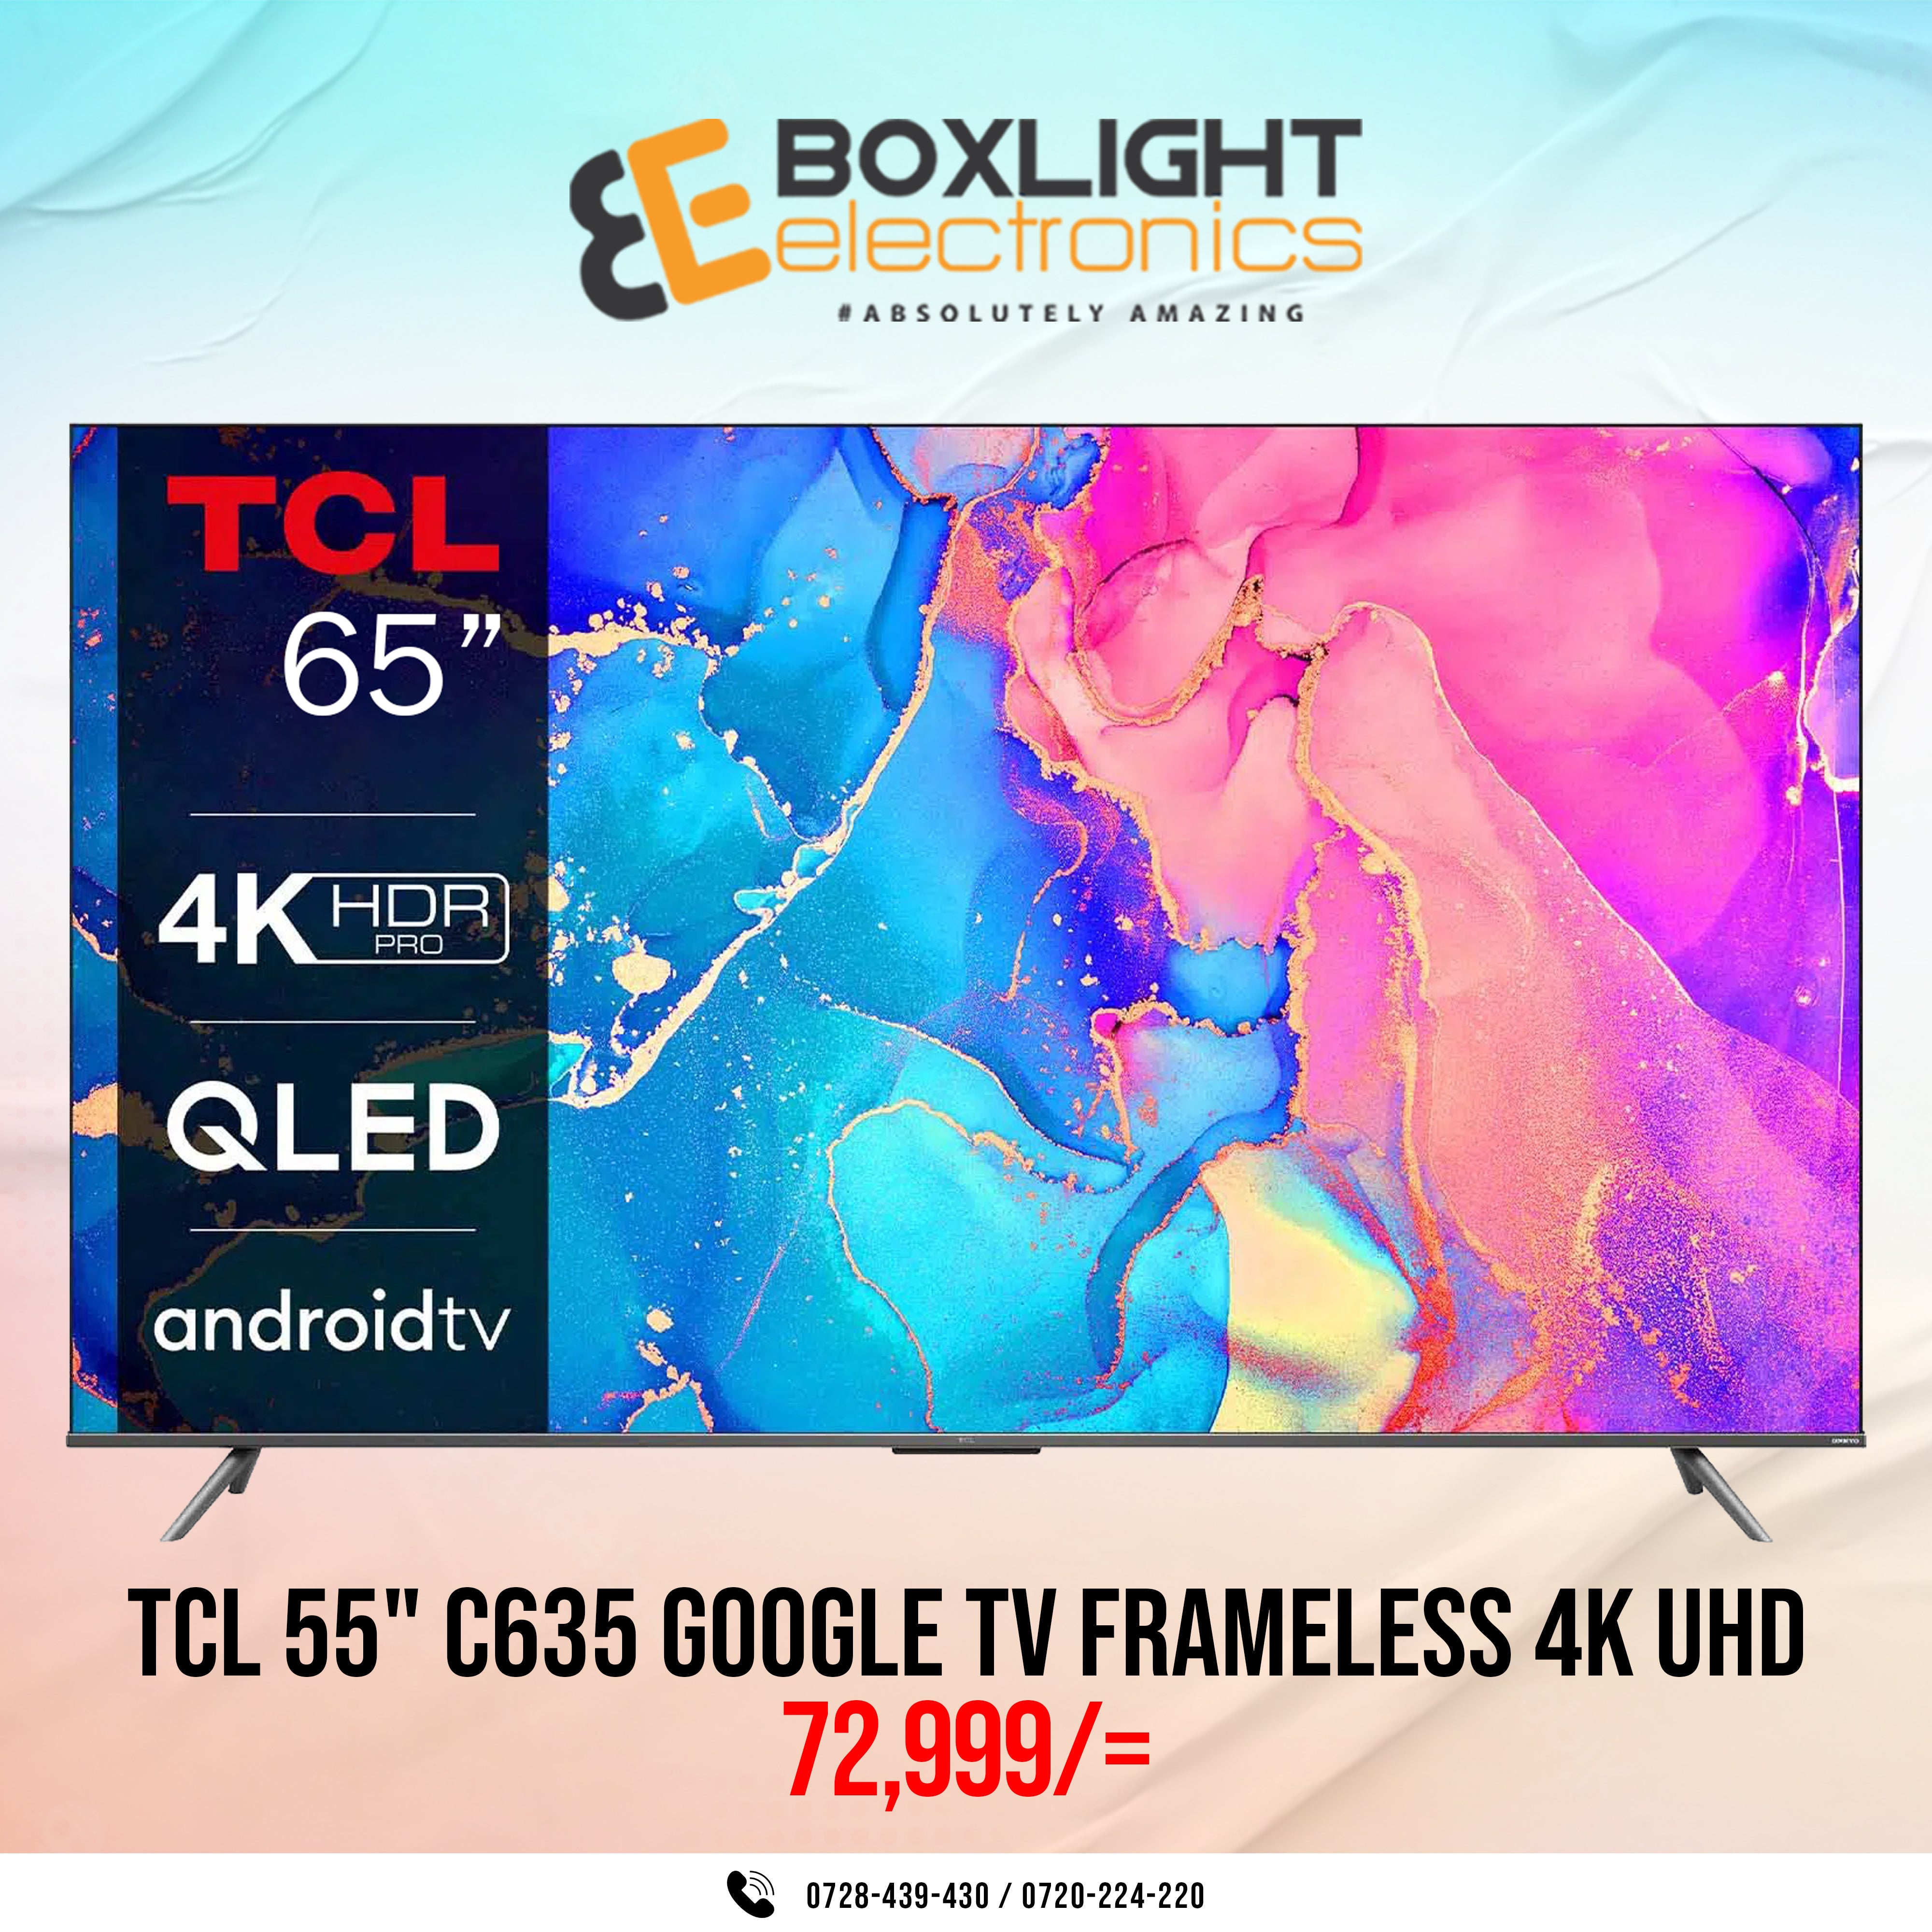 TCL 55" C635 GOOGLE FRAMELESS 4K UHD QLed Tv